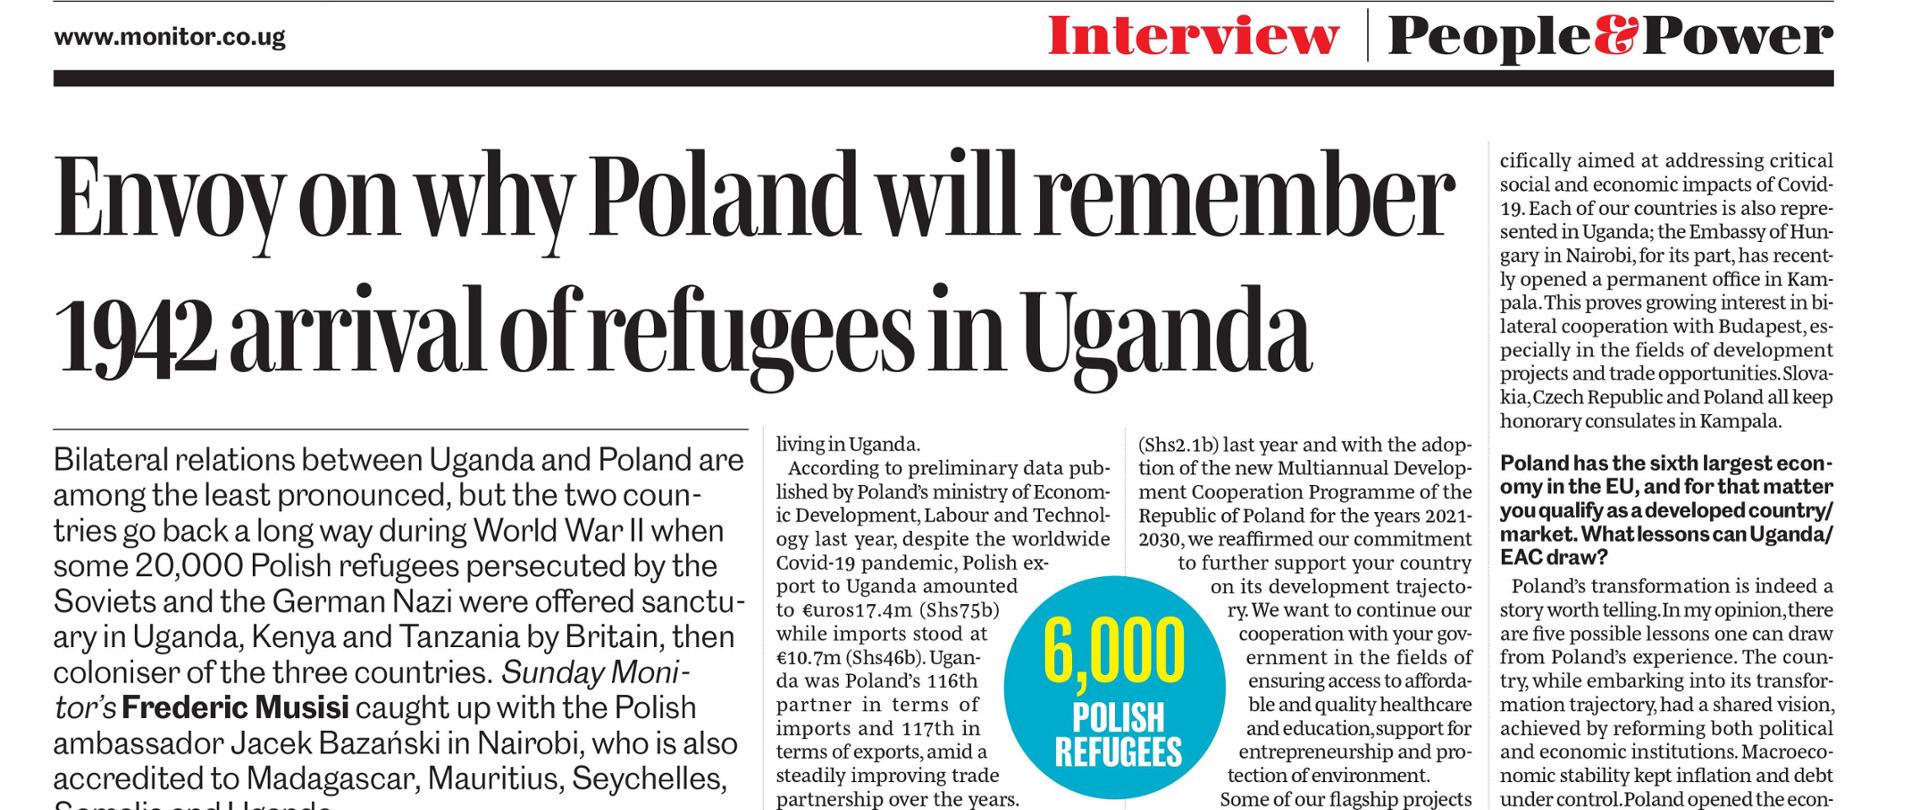 Wywiad z Ambasadorem Jackiem Bazańskim w ugandyjskim dzienniku Daily Monitor (publikacja 27.06.021)